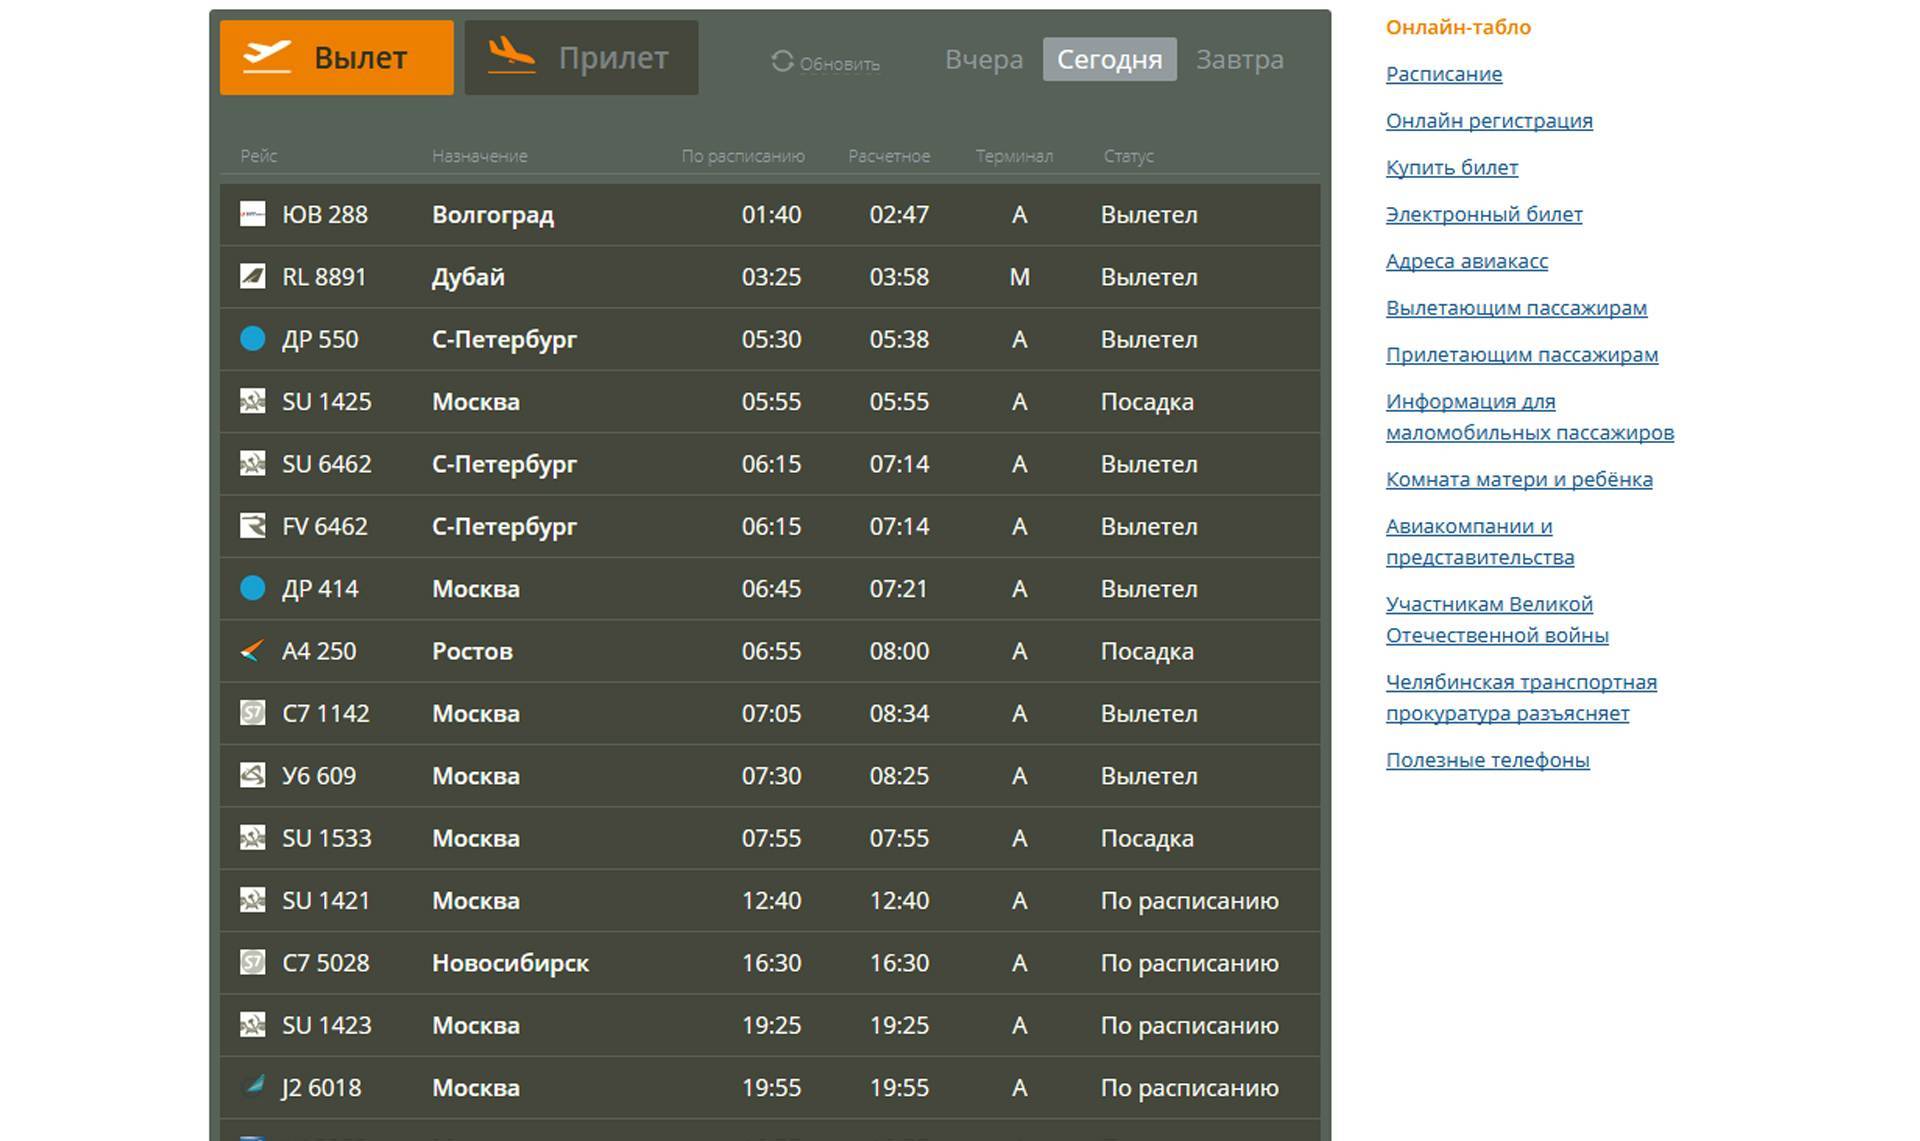 Аэропорт курган онлайн табло вылета и прилета на сегодня, расписание рейсов, справочная, телефон, авиабилеты